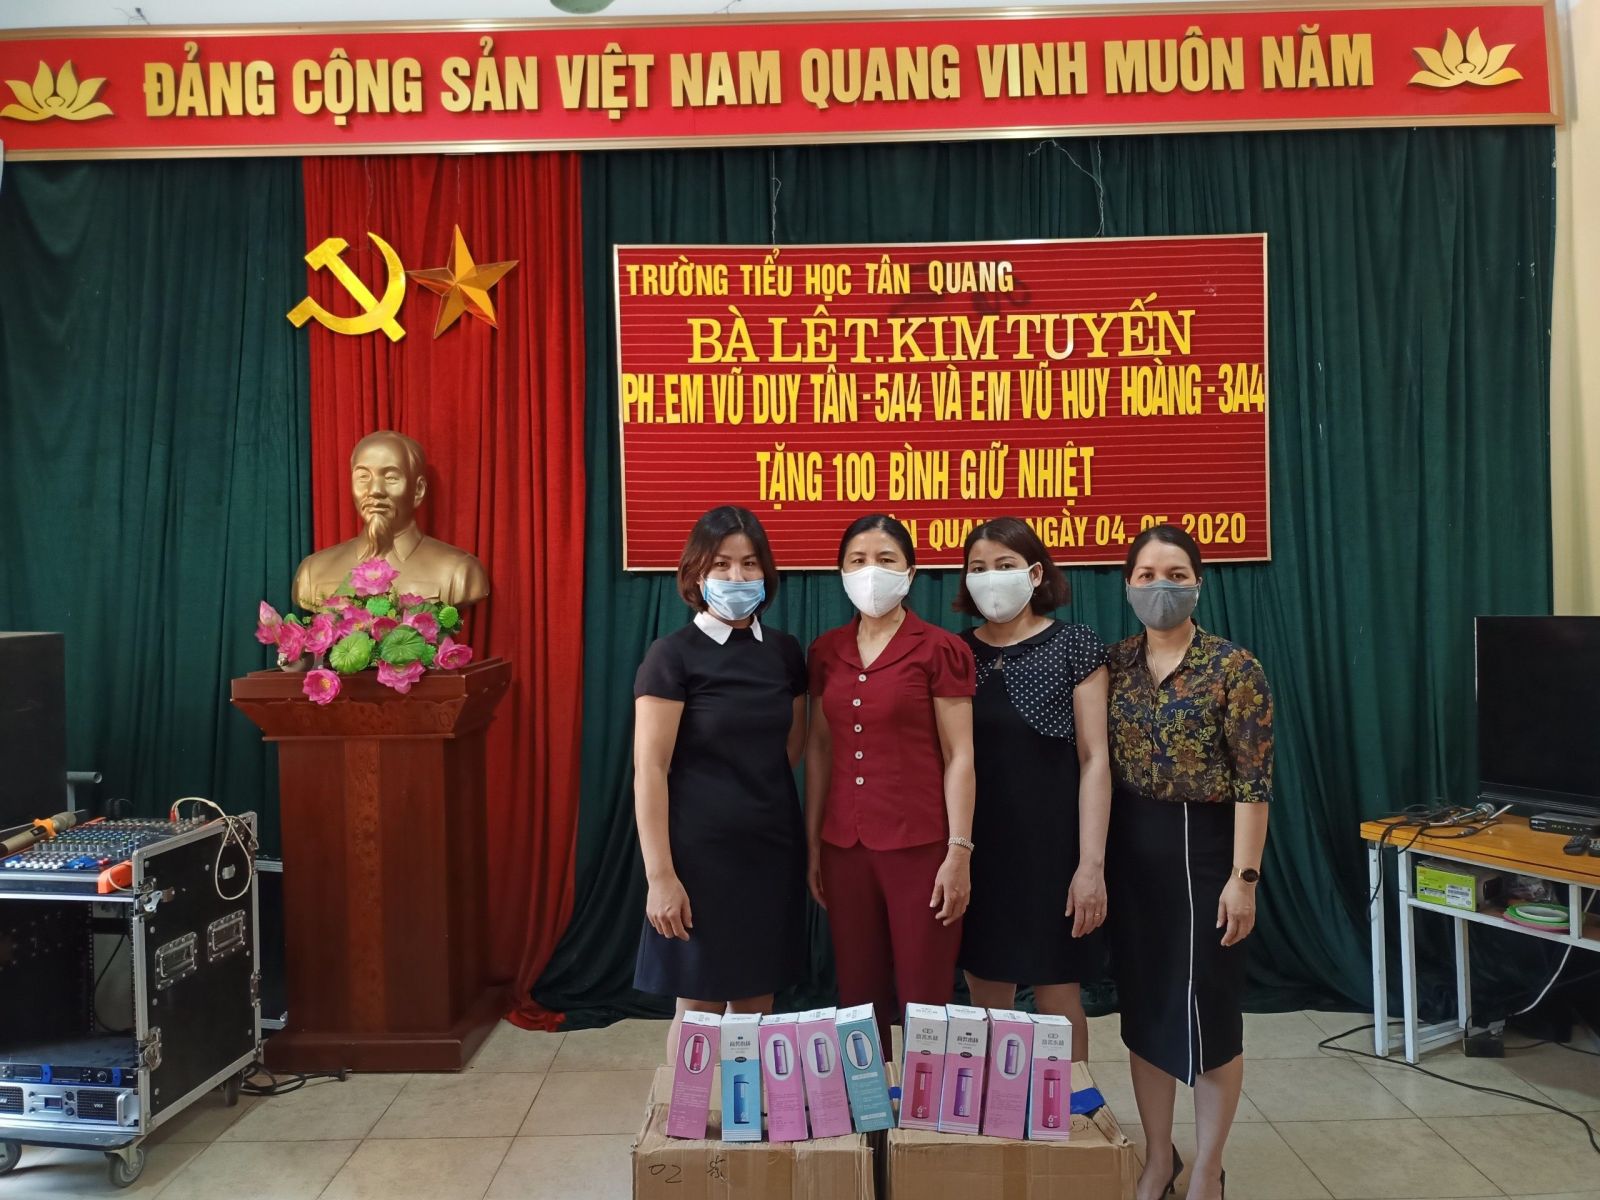 Bà Lê Thị Kim Tuyến-Phụ huynh em Vũ Duy Tân-5A4 và em Vũ Huy Hoàng ...